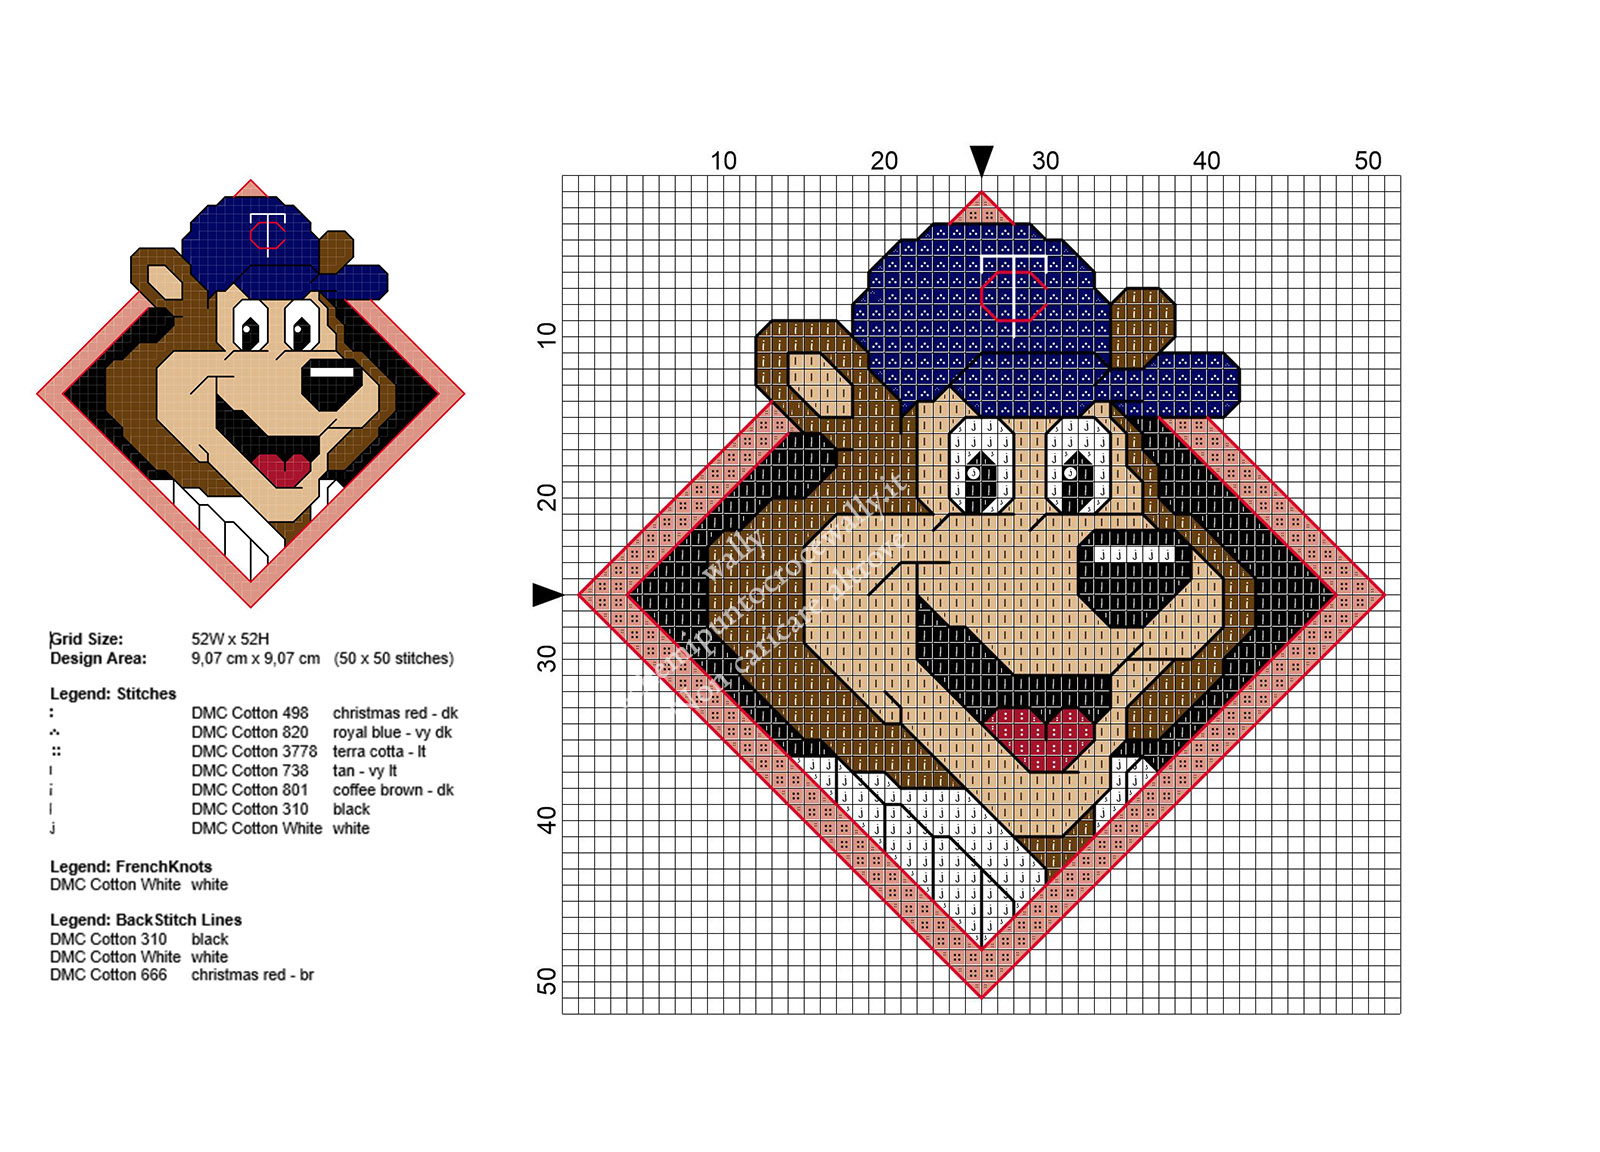 La mascotte dei Minnesota Twins squadra di Baseball americana schema punto croce gratis 50x50